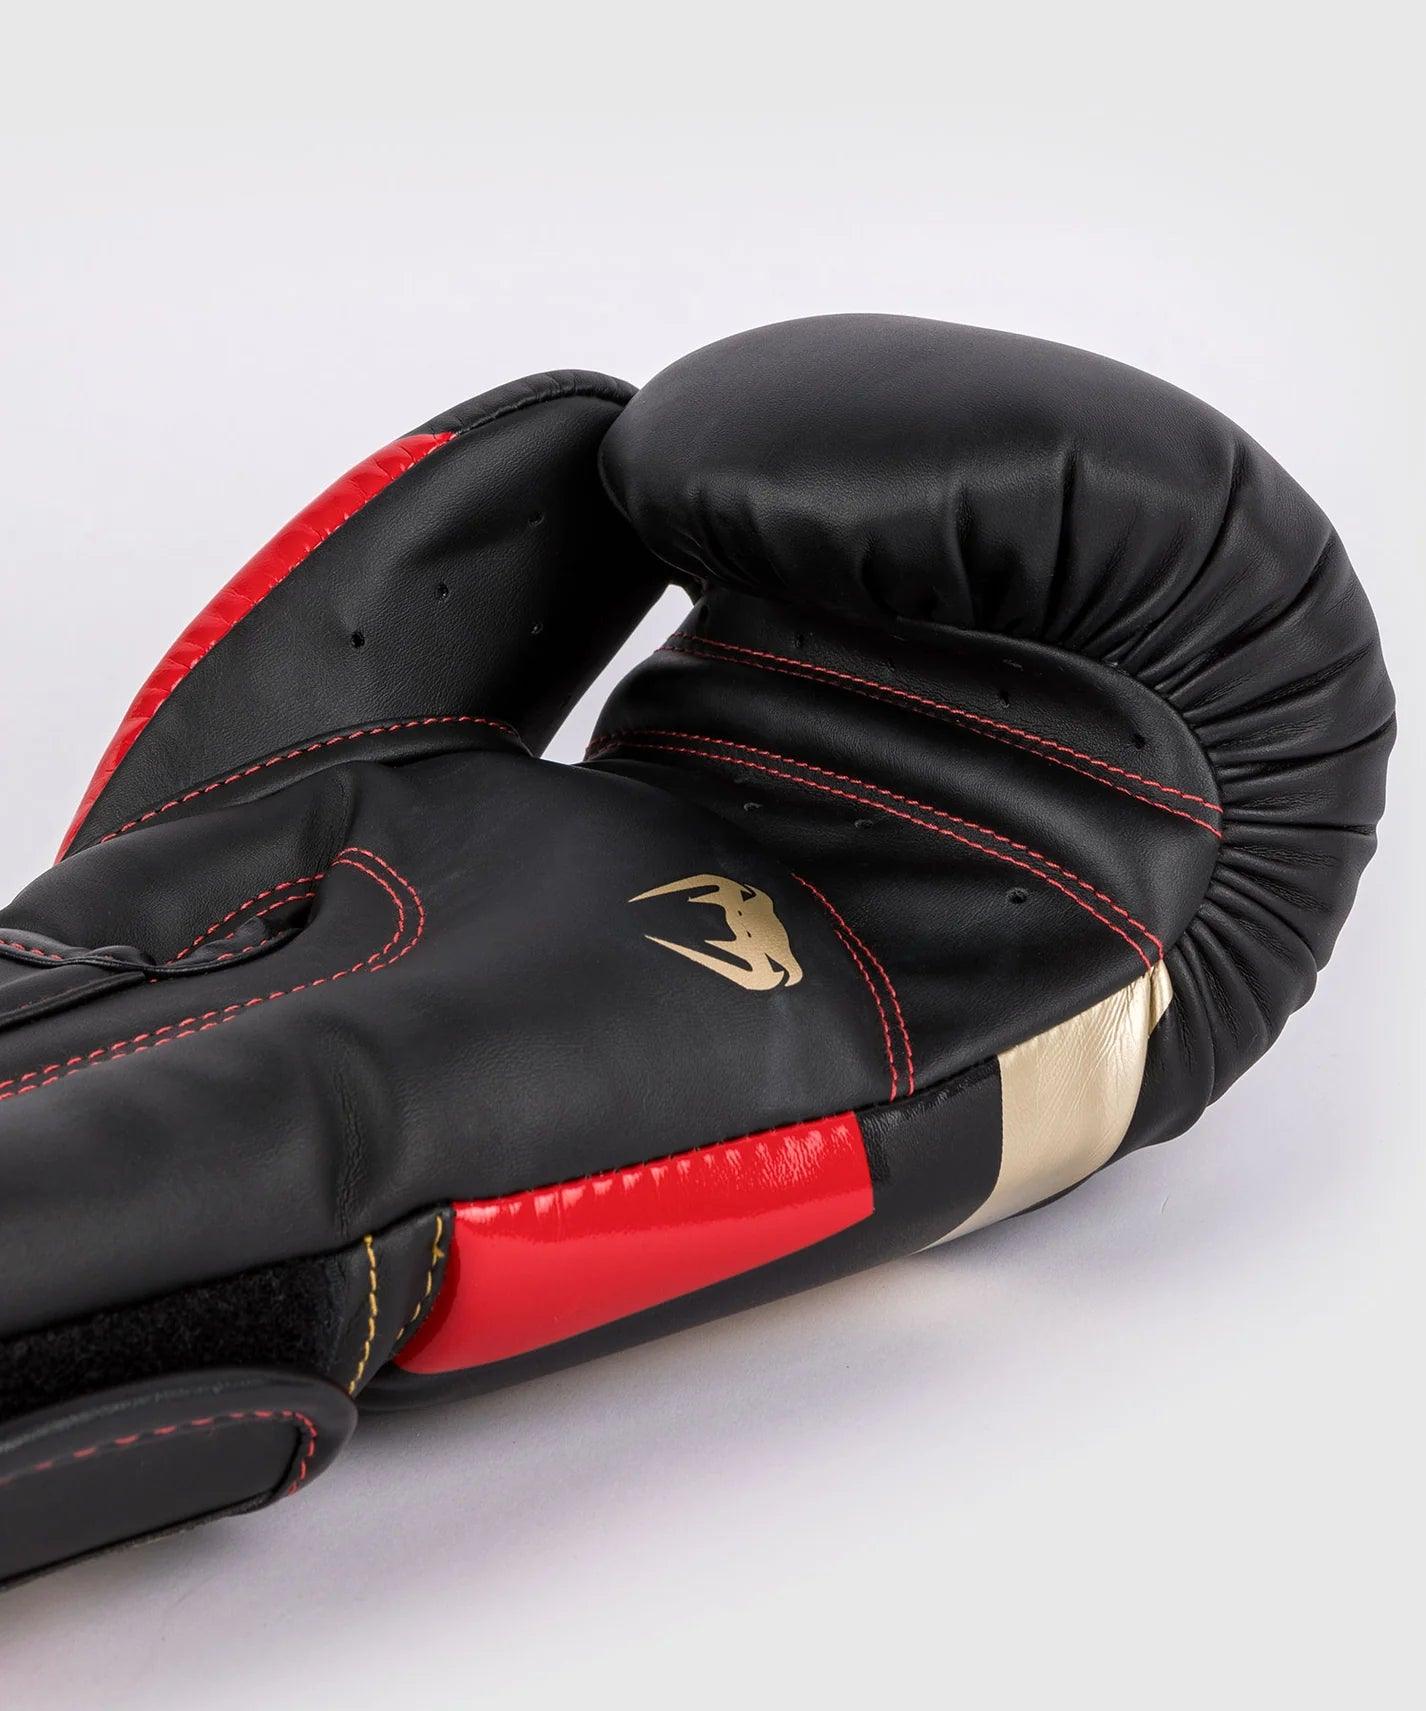 Gants de boxe Venum Elite - Boutique des Arts Martiaux et Sports de Combat